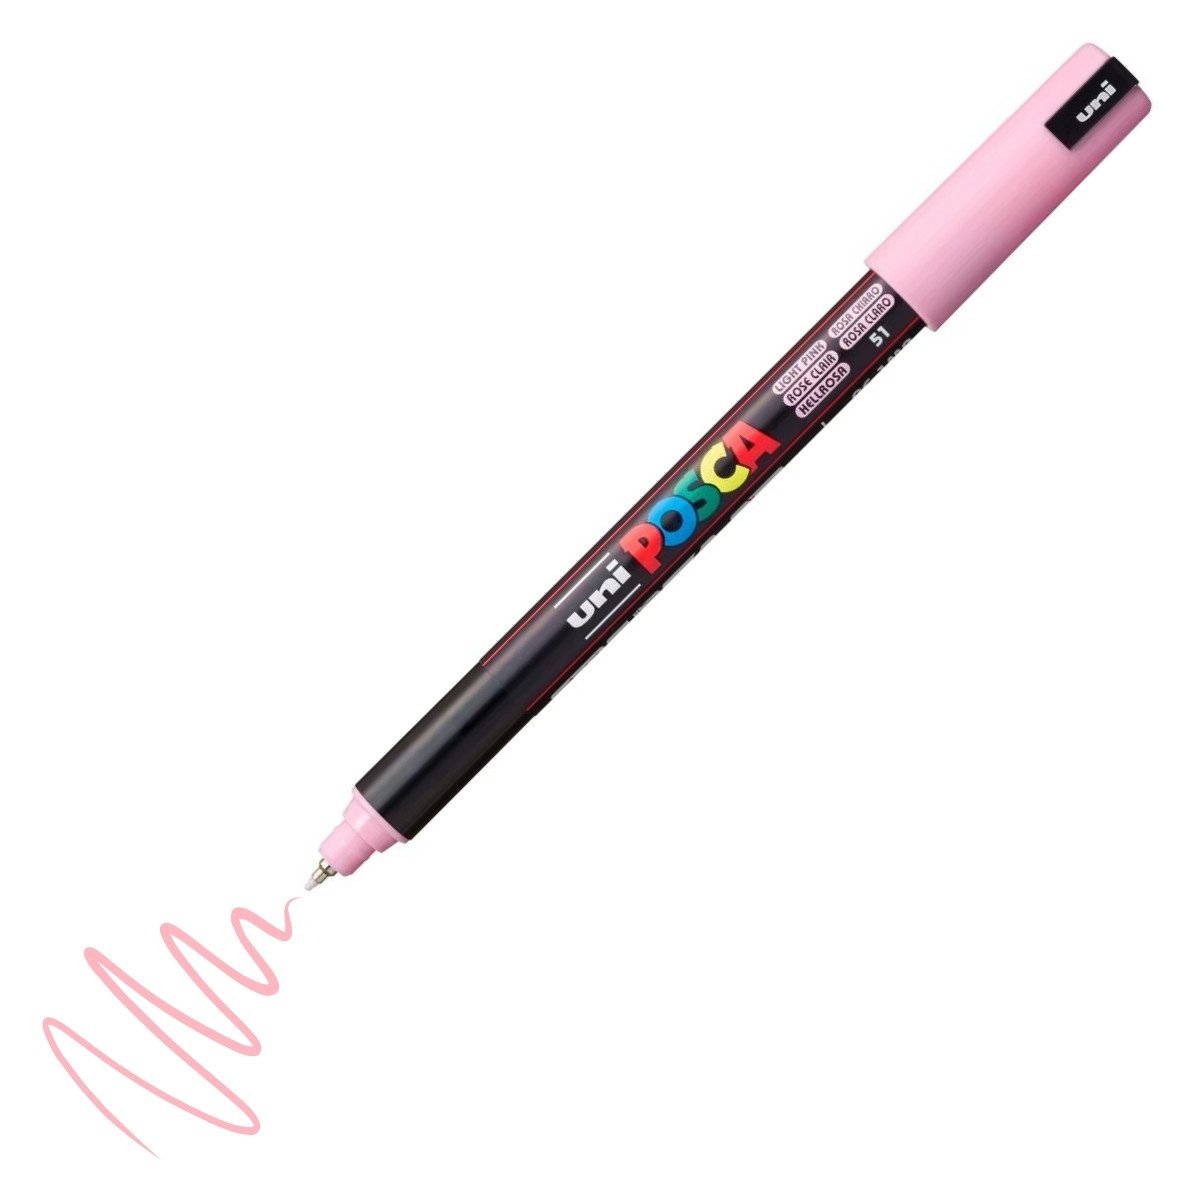 Uni Posca Marker PC-1MR Ultra Fine 0.7mm Light Pink